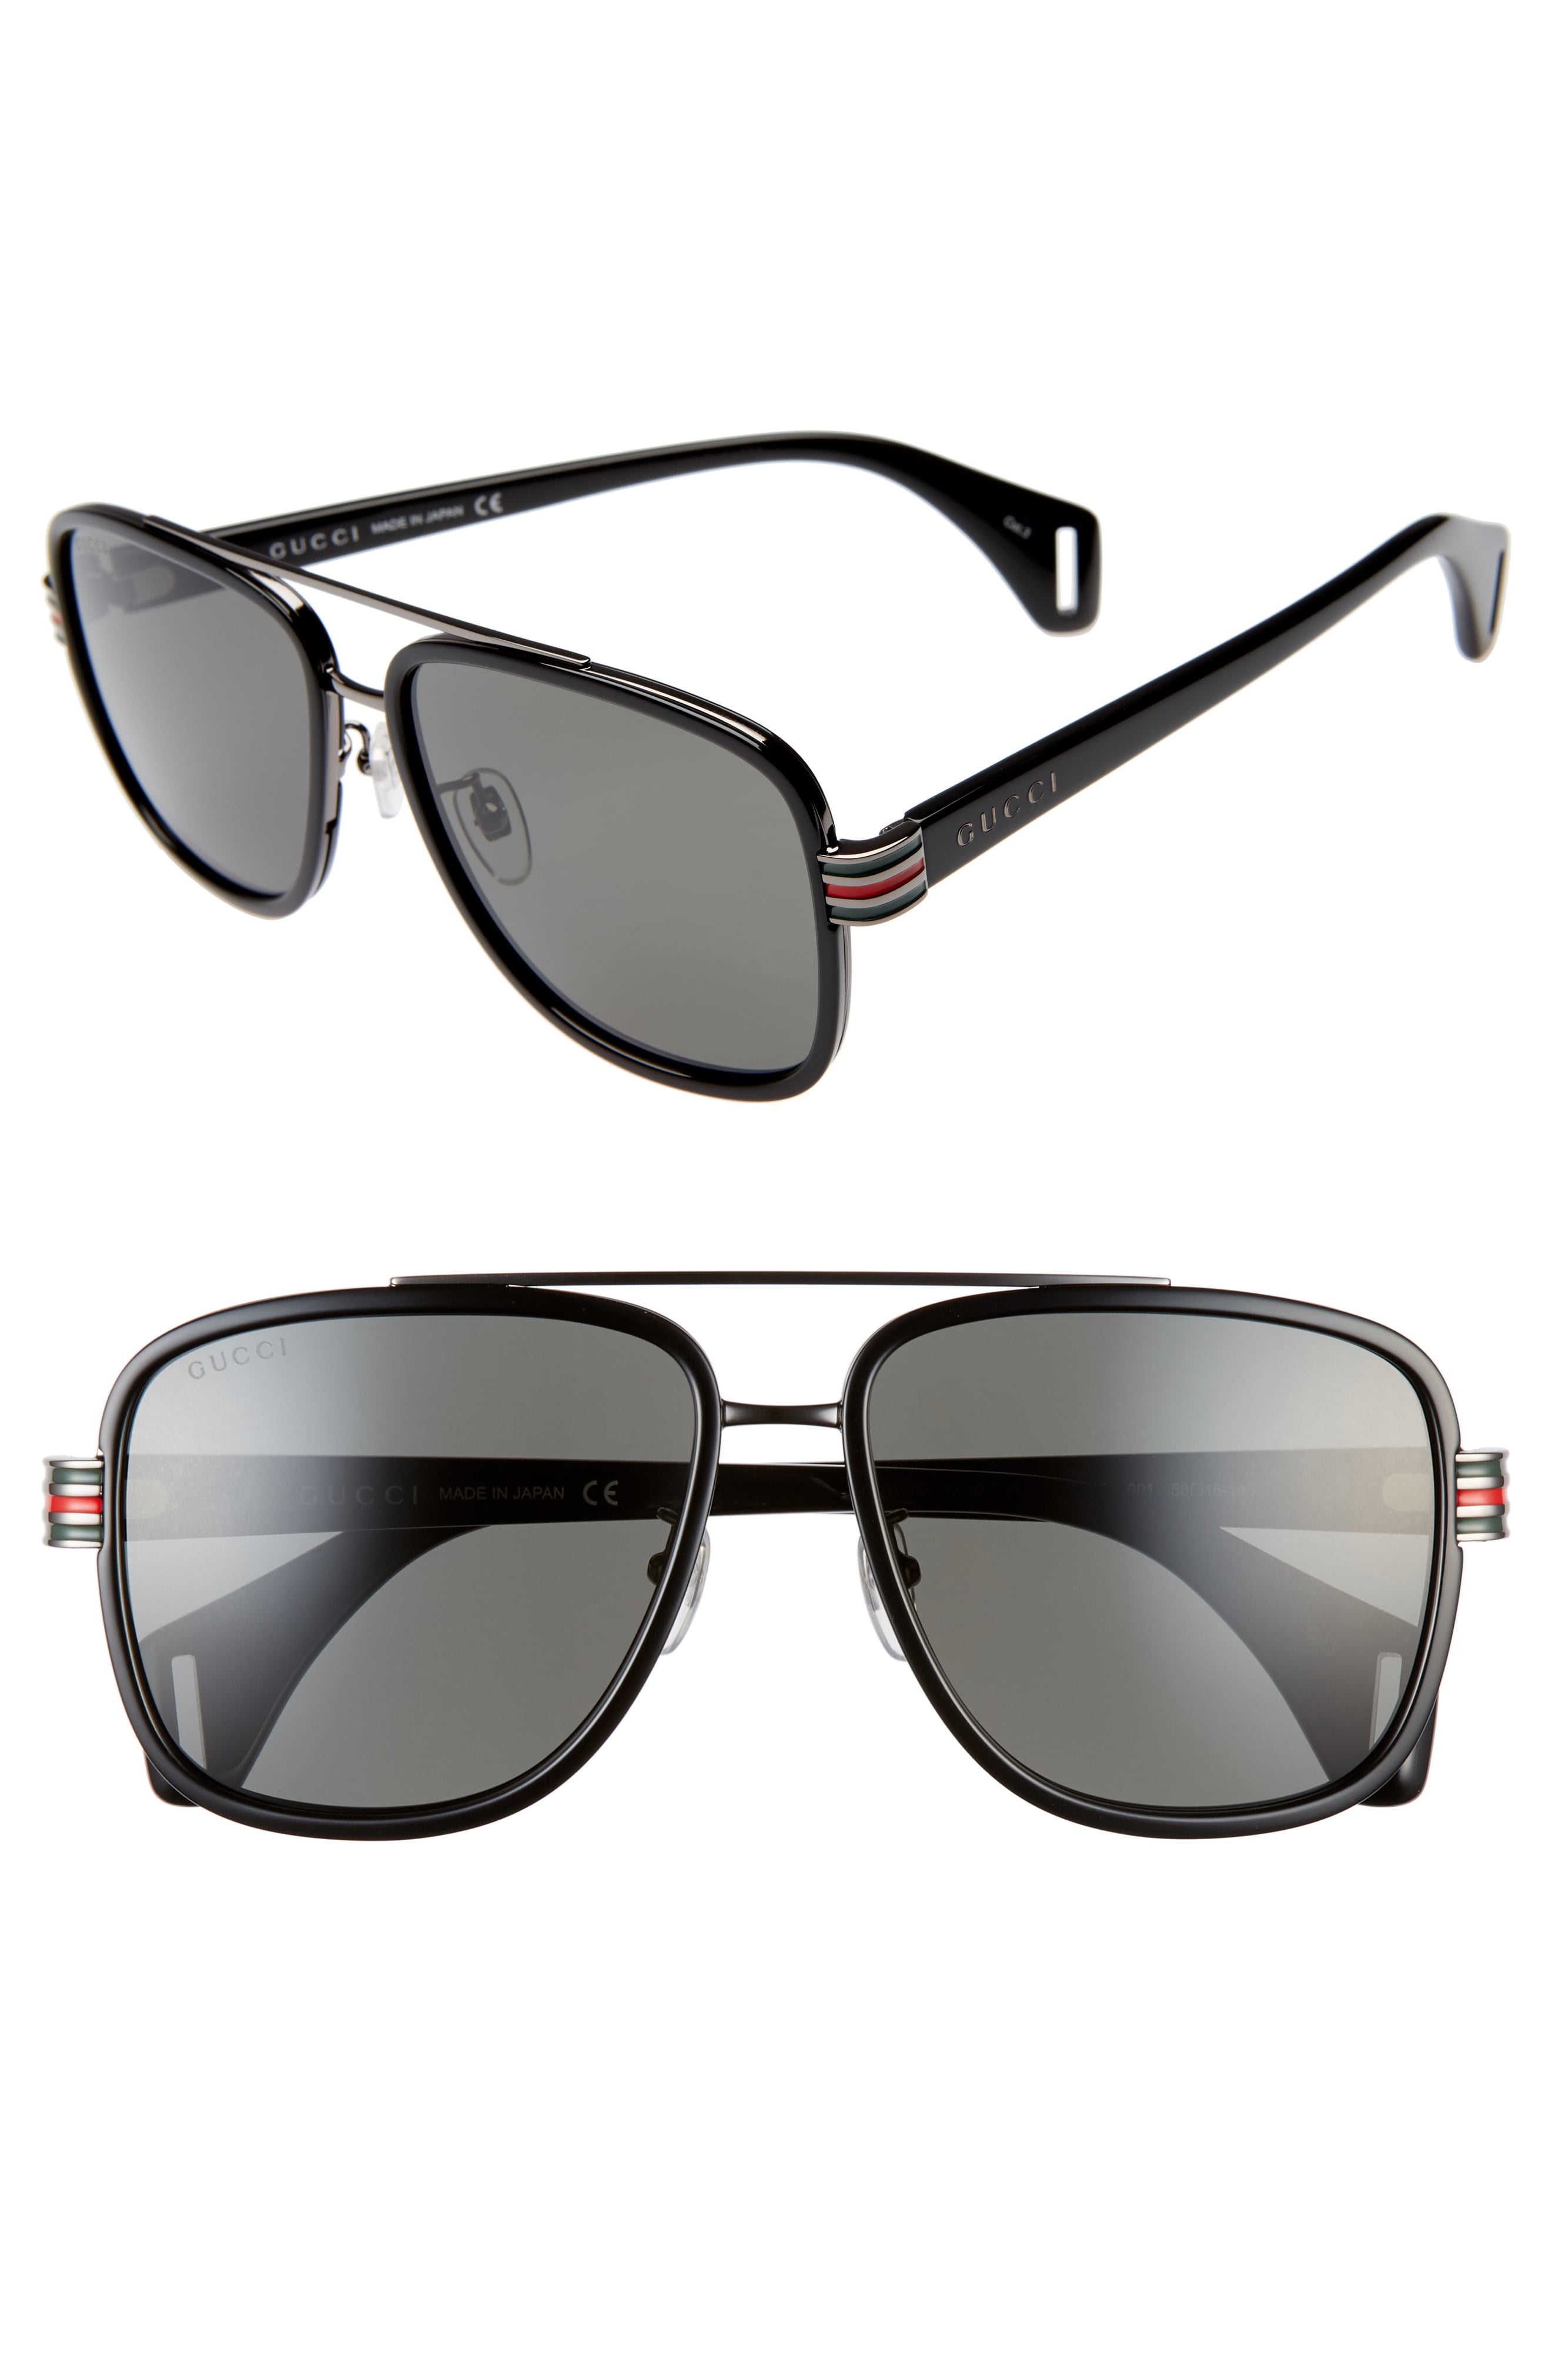 gucci latest sunglasses 2019